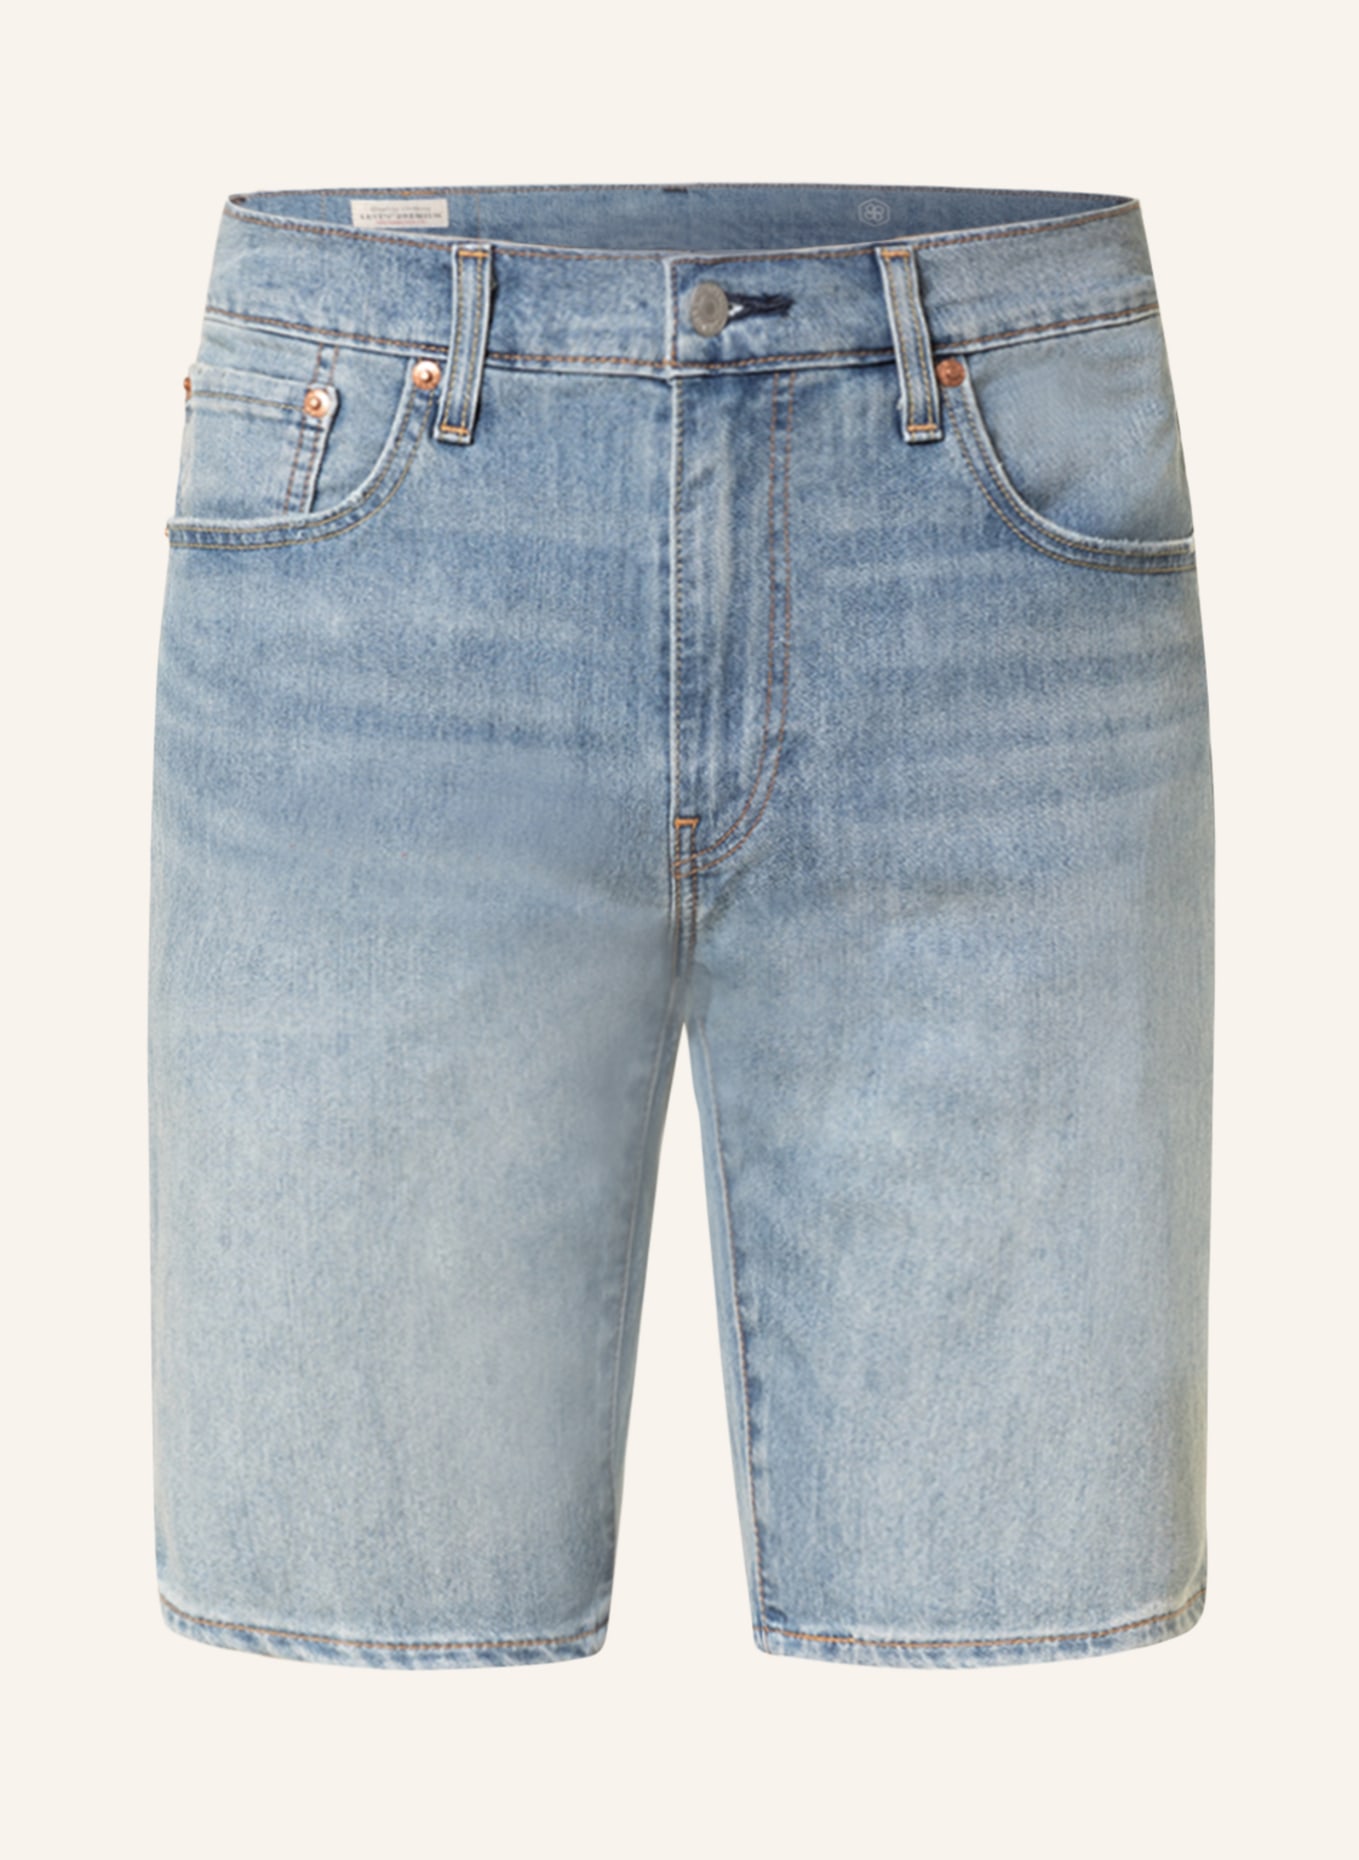 Levi's® Jeans shorts 405 standard fit, Color: 02 Med Indigo - Worn In (Image 1)